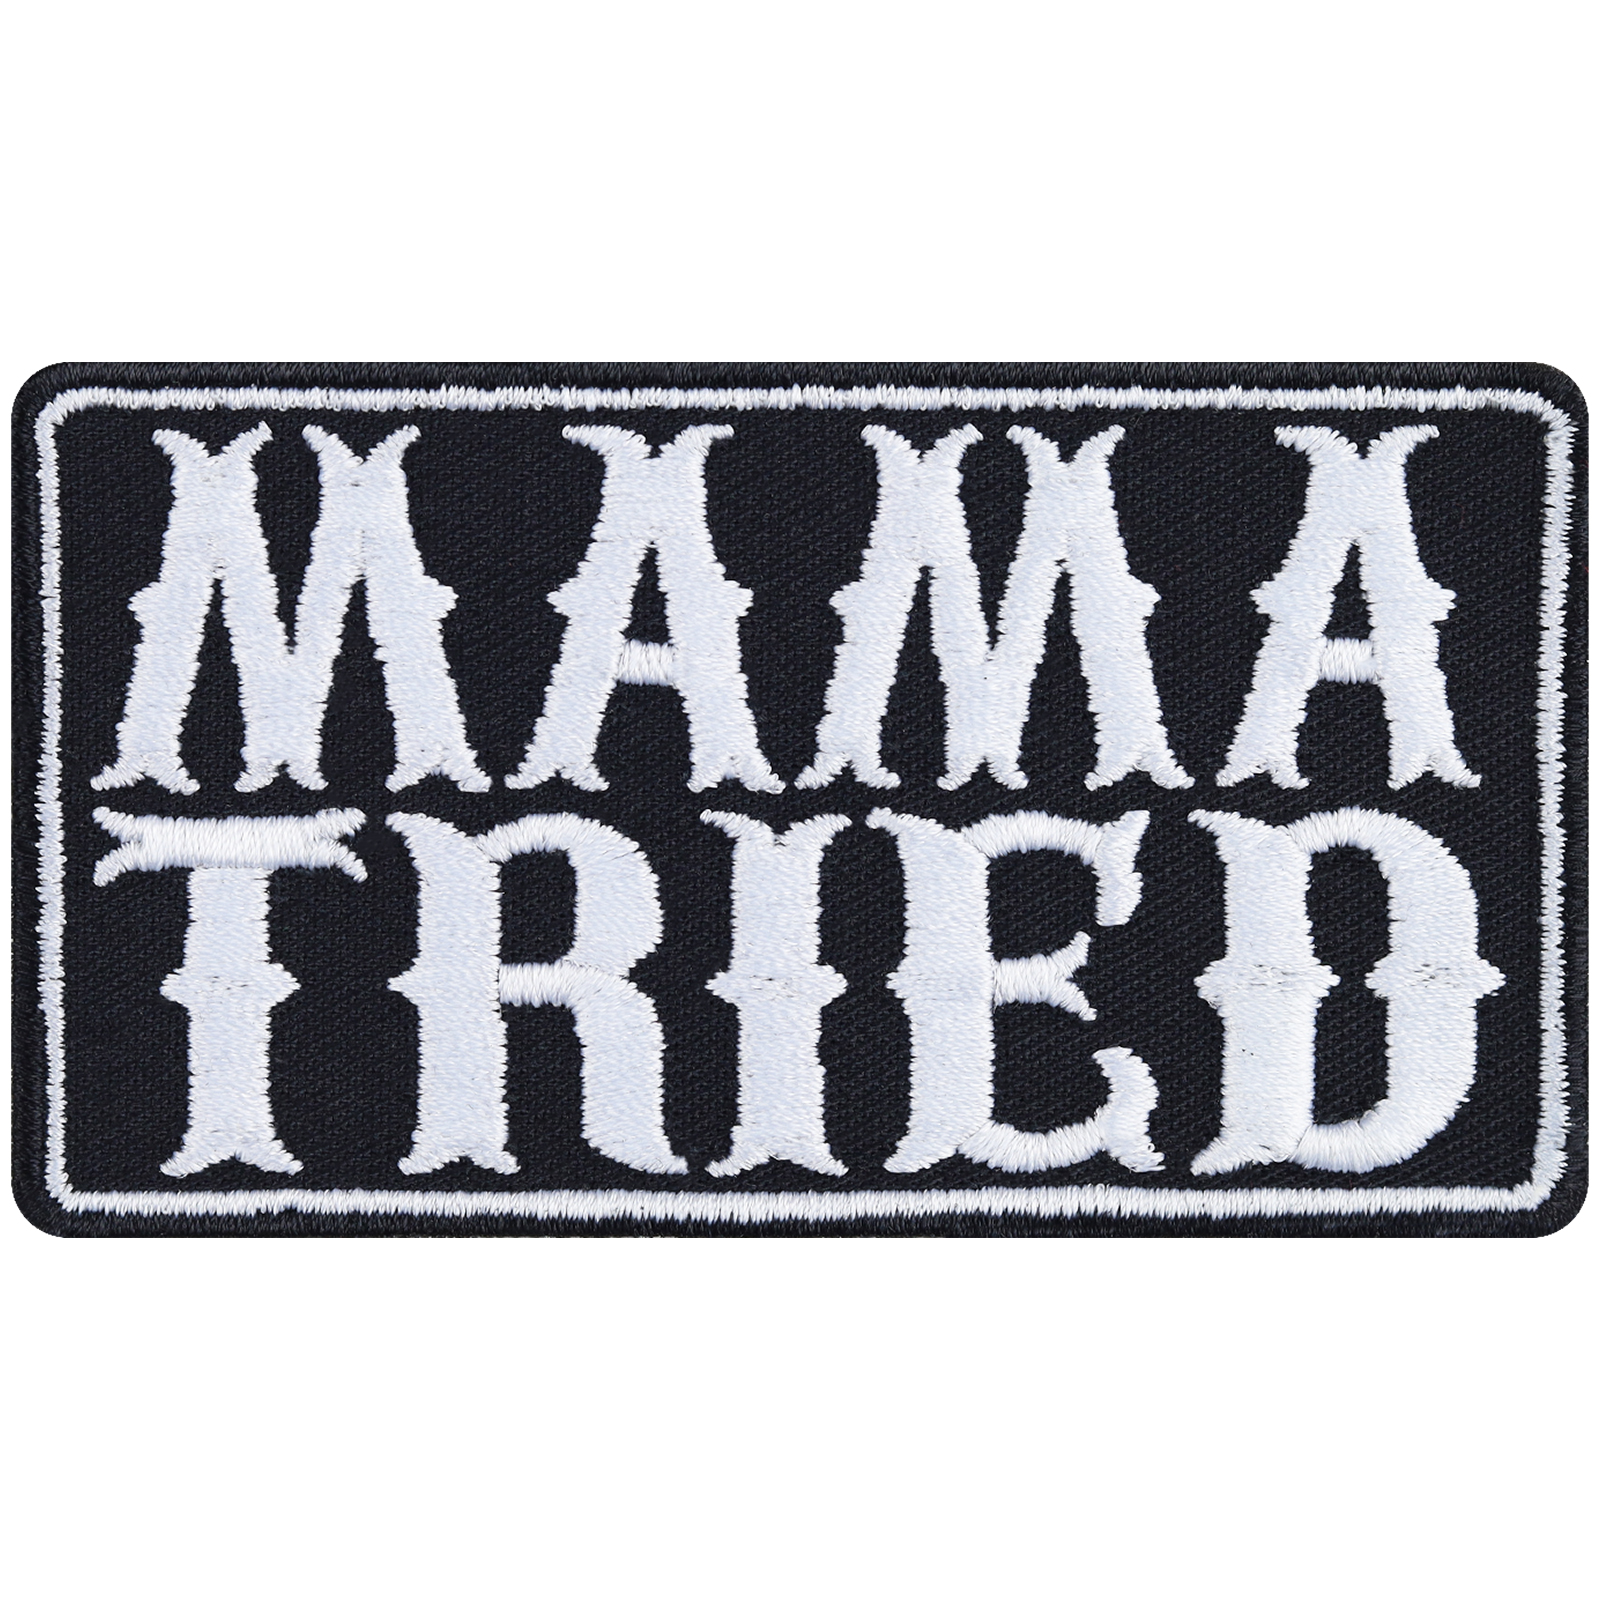 Mama Tried - Patch